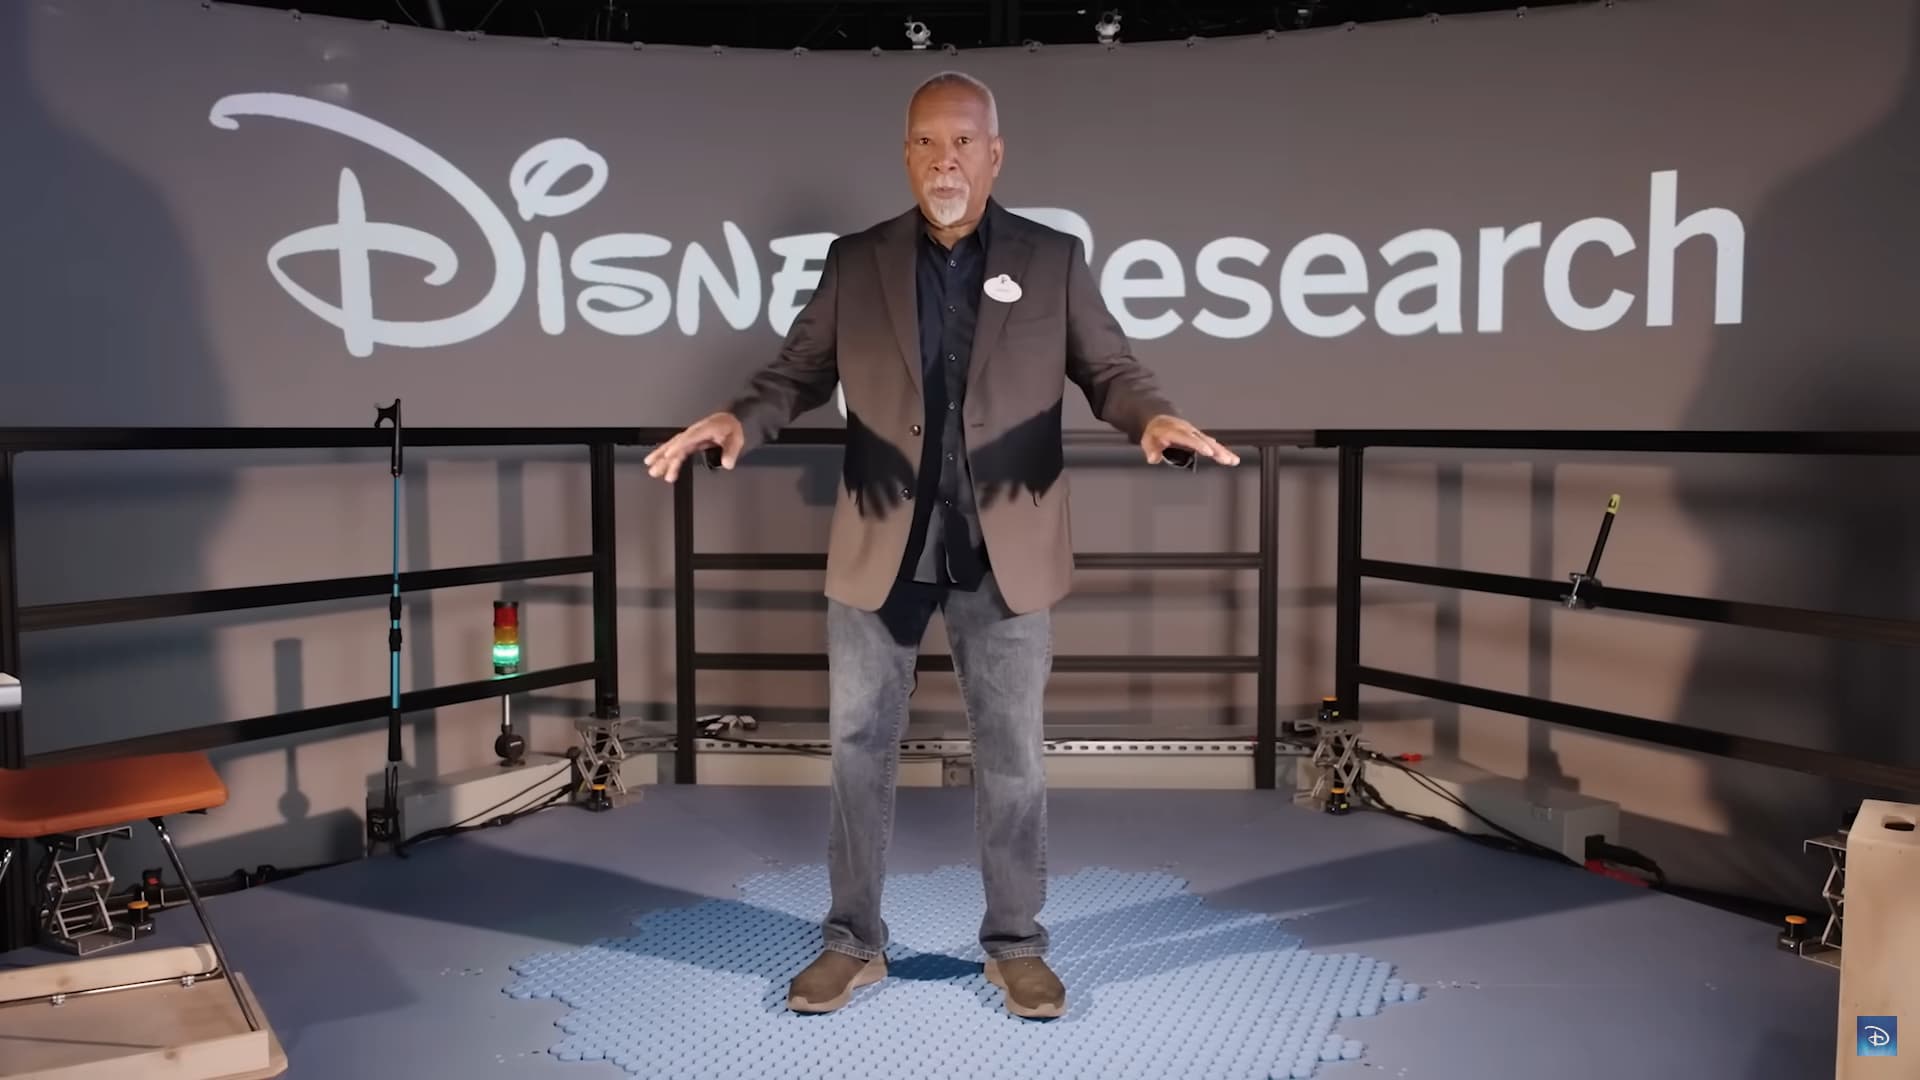 Disney svela un tappeto che permette di camminare “per davvero” nel mondo del metaverso